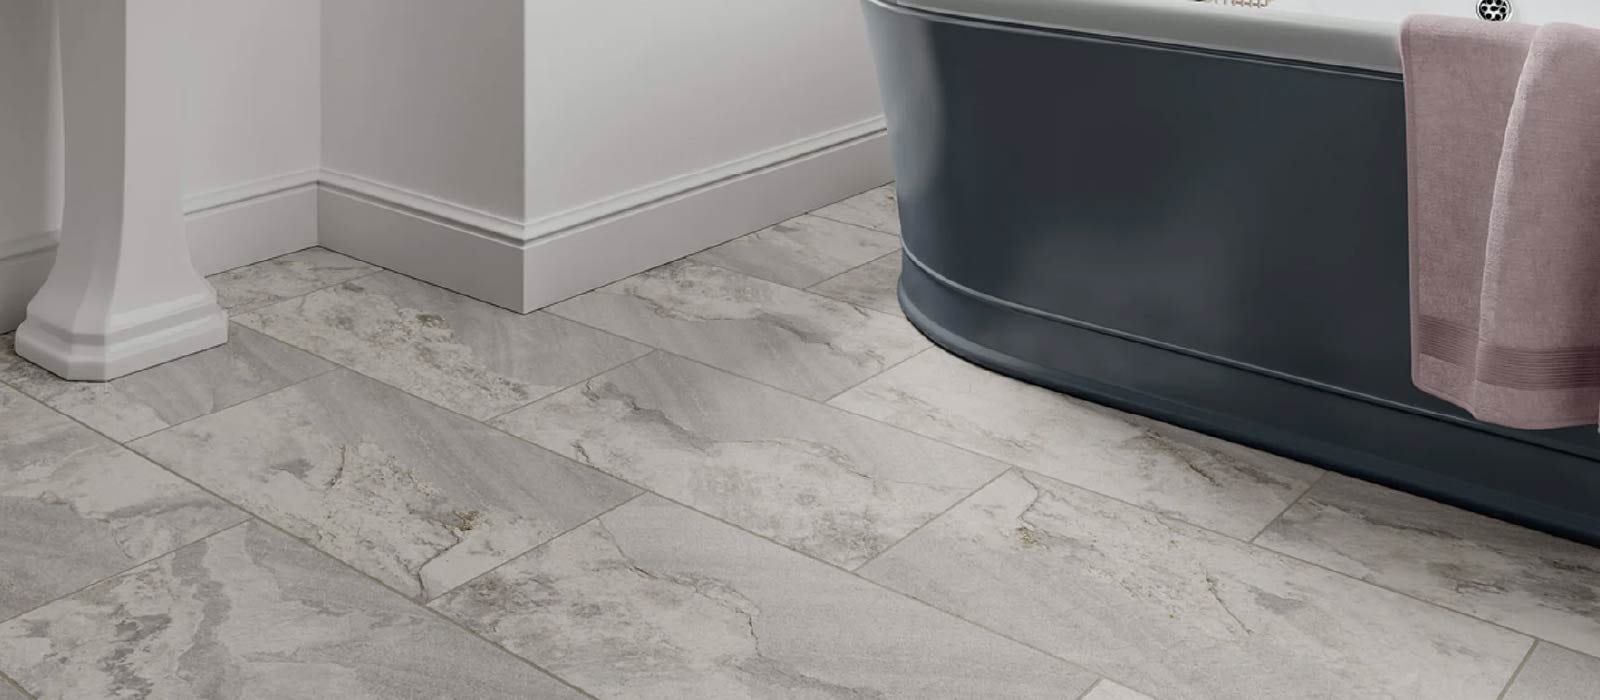 Anti Slip Tiles, Non Slip Floor Tiles For Bathroom